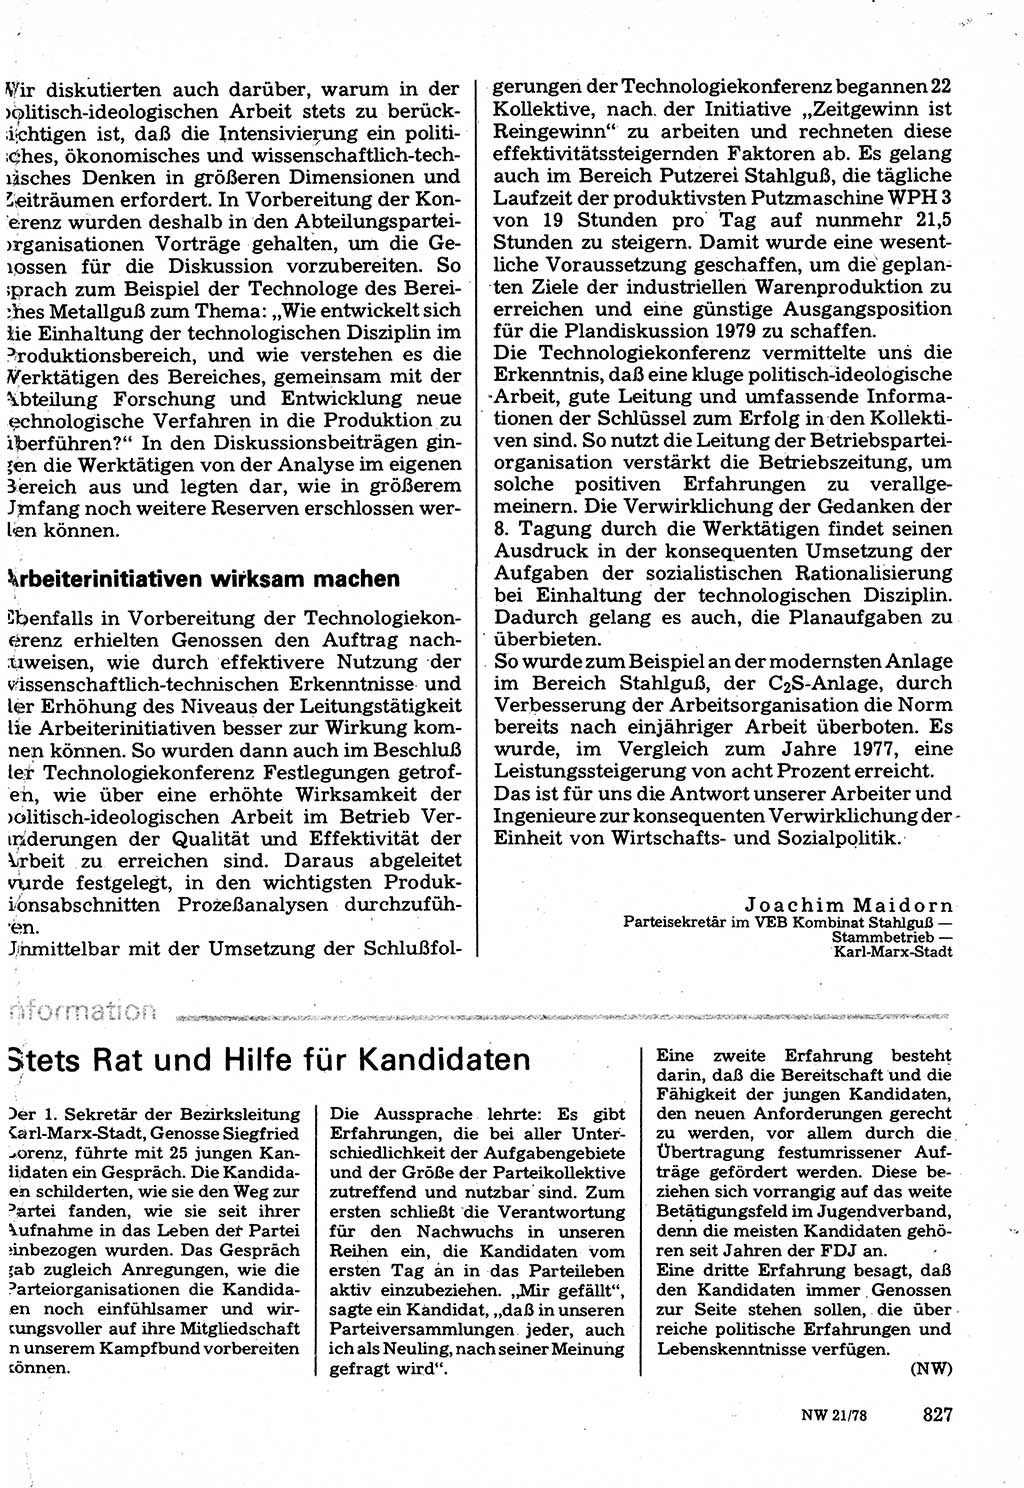 Neuer Weg (NW), Organ des Zentralkomitees (ZK) der SED (Sozialistische Einheitspartei Deutschlands) für Fragen des Parteilebens, 33. Jahrgang [Deutsche Demokratische Republik (DDR)] 1978, Seite 827 (NW ZK SED DDR 1978, S. 827)